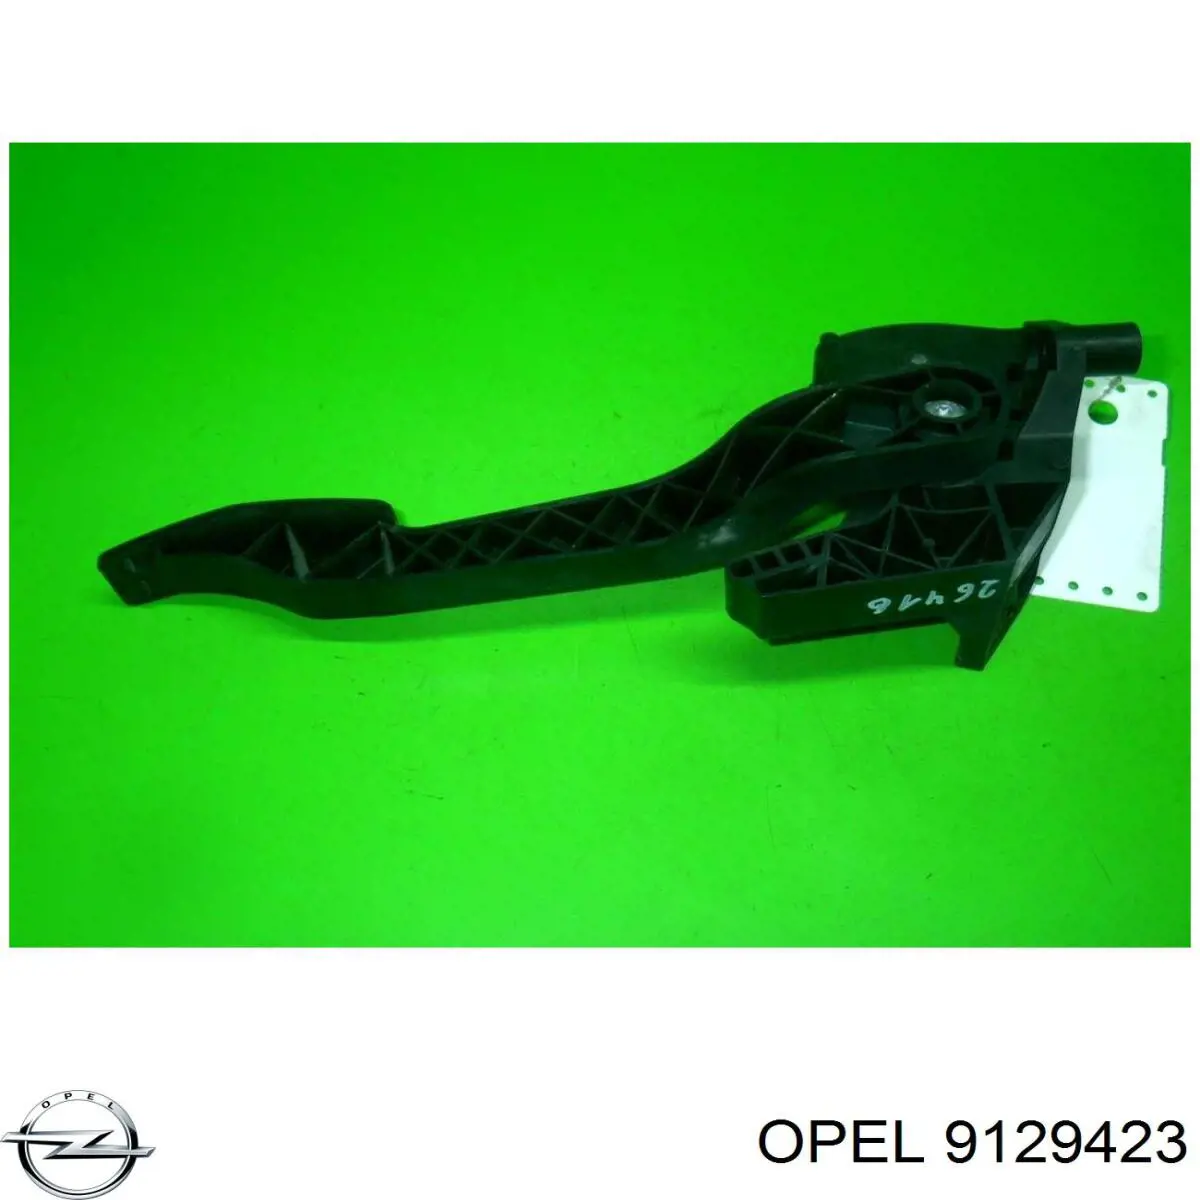 9129423 Opel pedal de acelerador